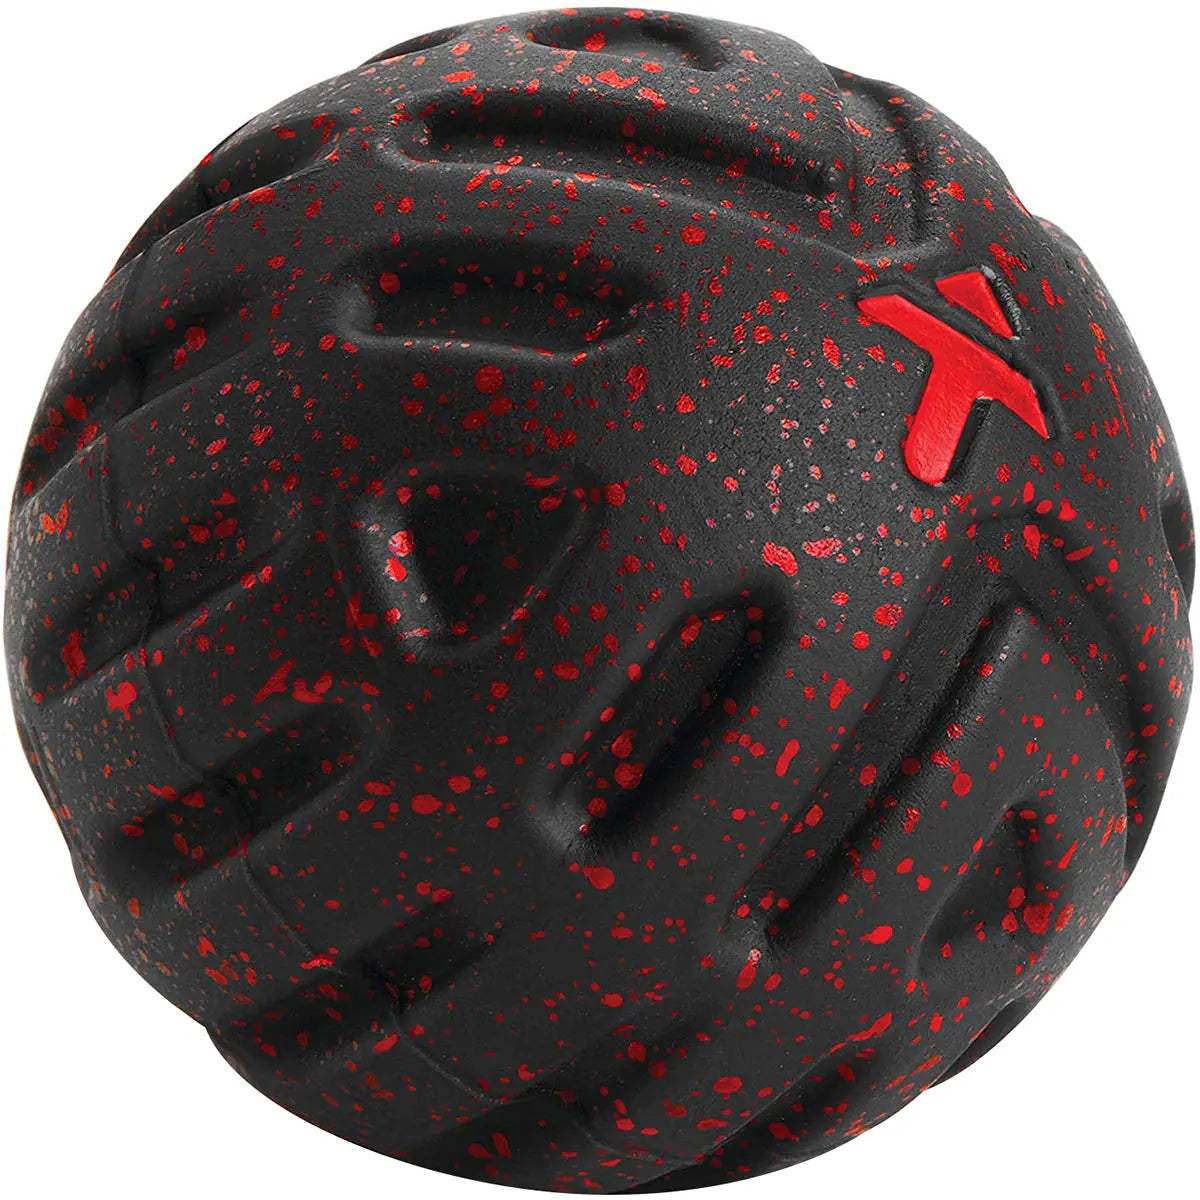 TriggerPoint 2.5" Deep Tissue Massage Ball - Black/Red TriggerPoint